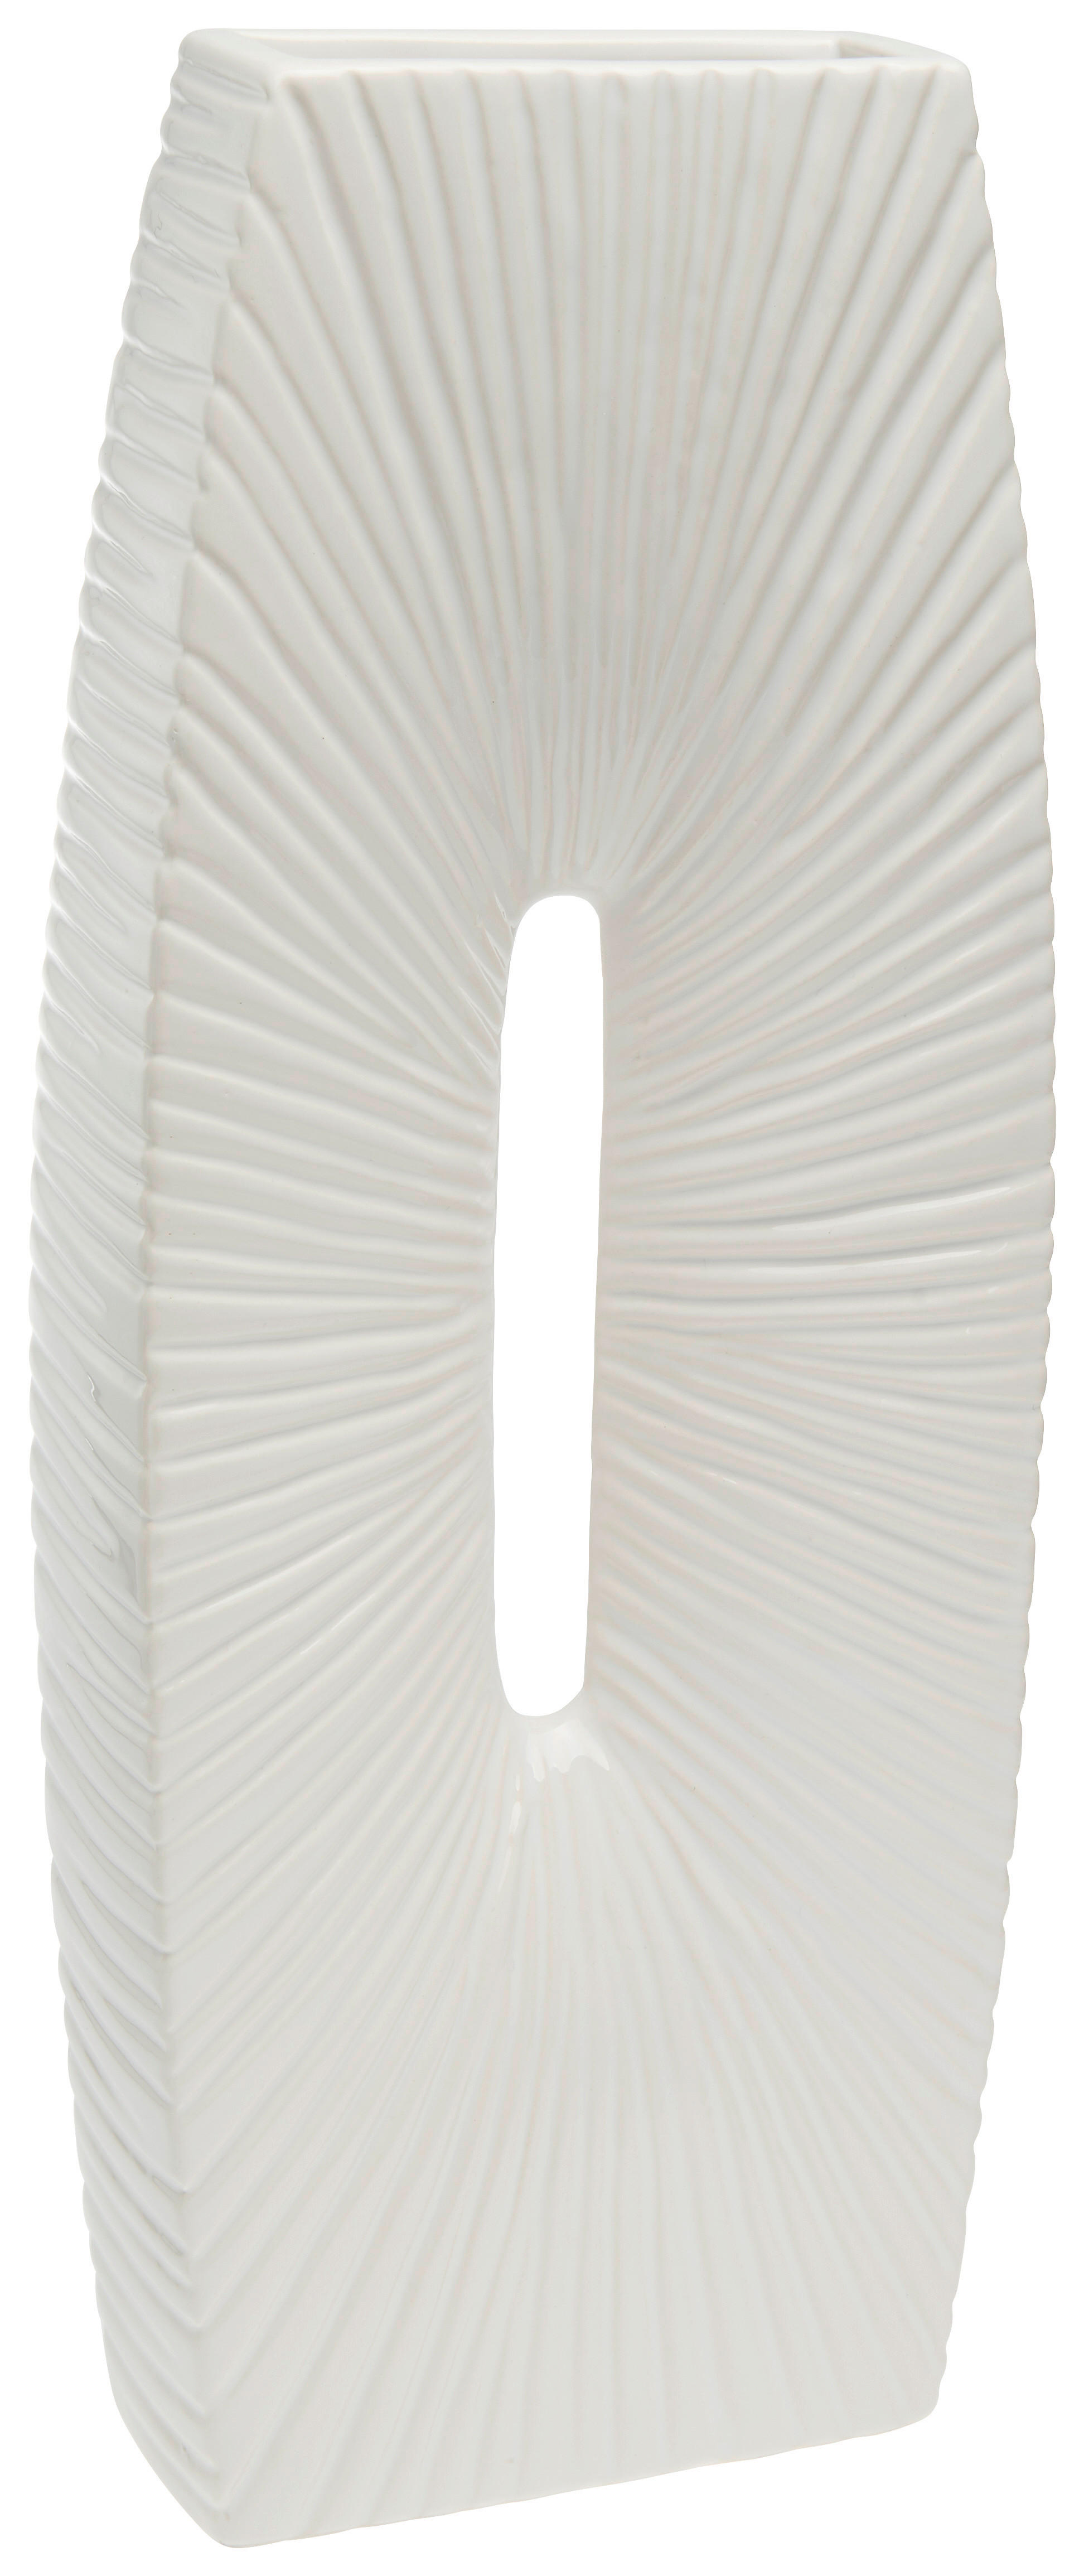 VAZĂ 41.4 cm  - alb, Design, ceramică (15/38/5cm) - Ambia Home